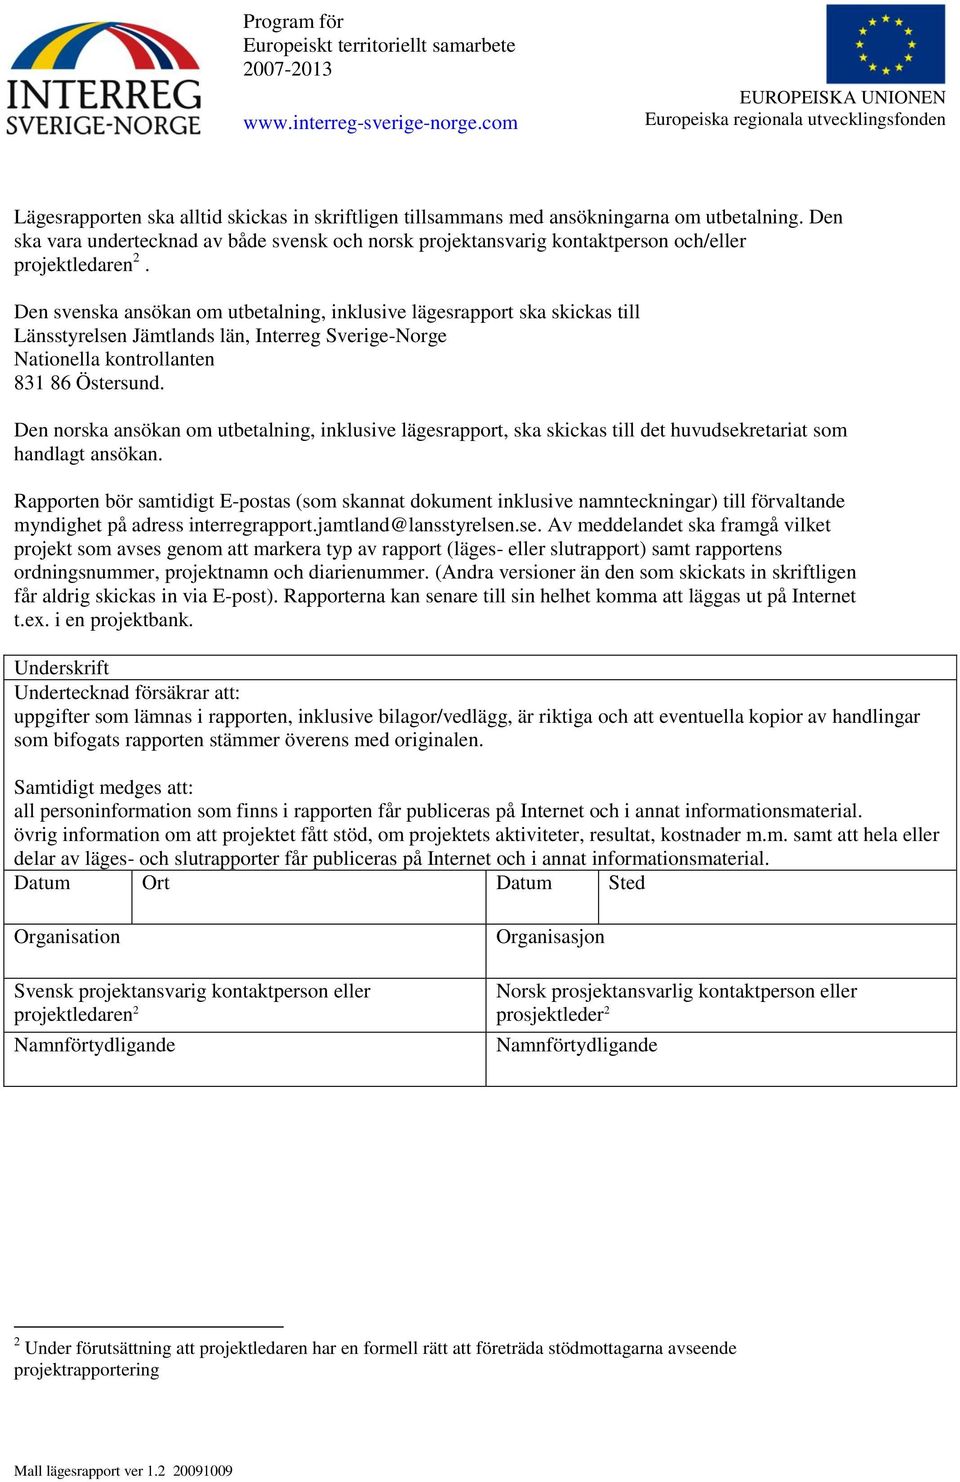 Den svenska ansökan om utbetalning, inklusive lägesrapport ska skickas till Länsstyrelsen Jämtlands län, Interreg Sverige-Norge Nationella kontrollanten 831 86 Östersund.